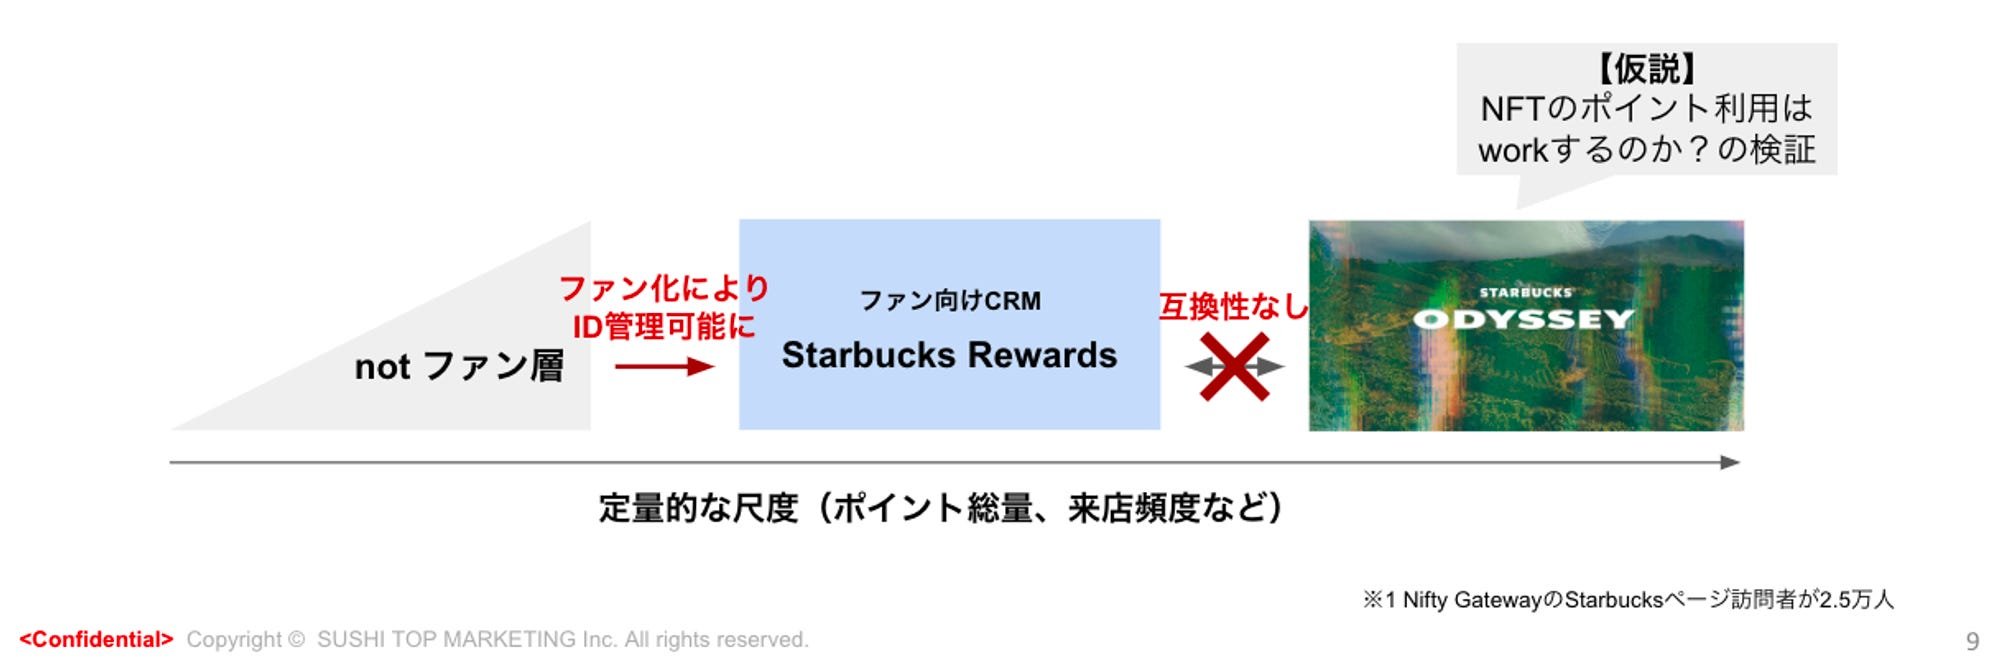 202403_Starbucks Odyssey3